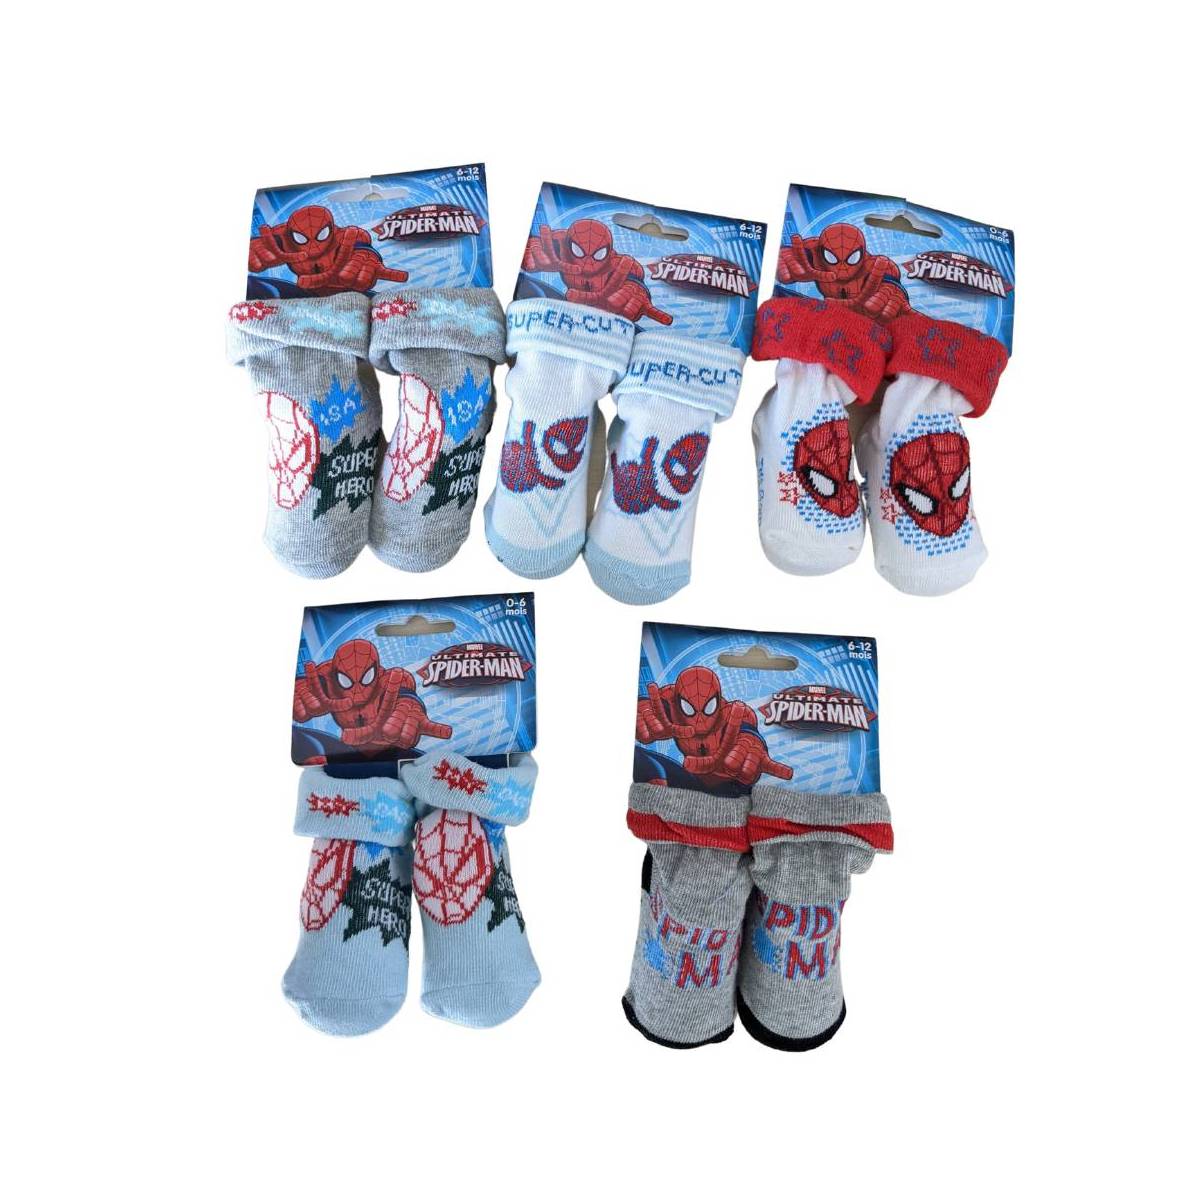 24 paires de chaussettes Spiderman 0 à 6 mois et 6 à 12 mois